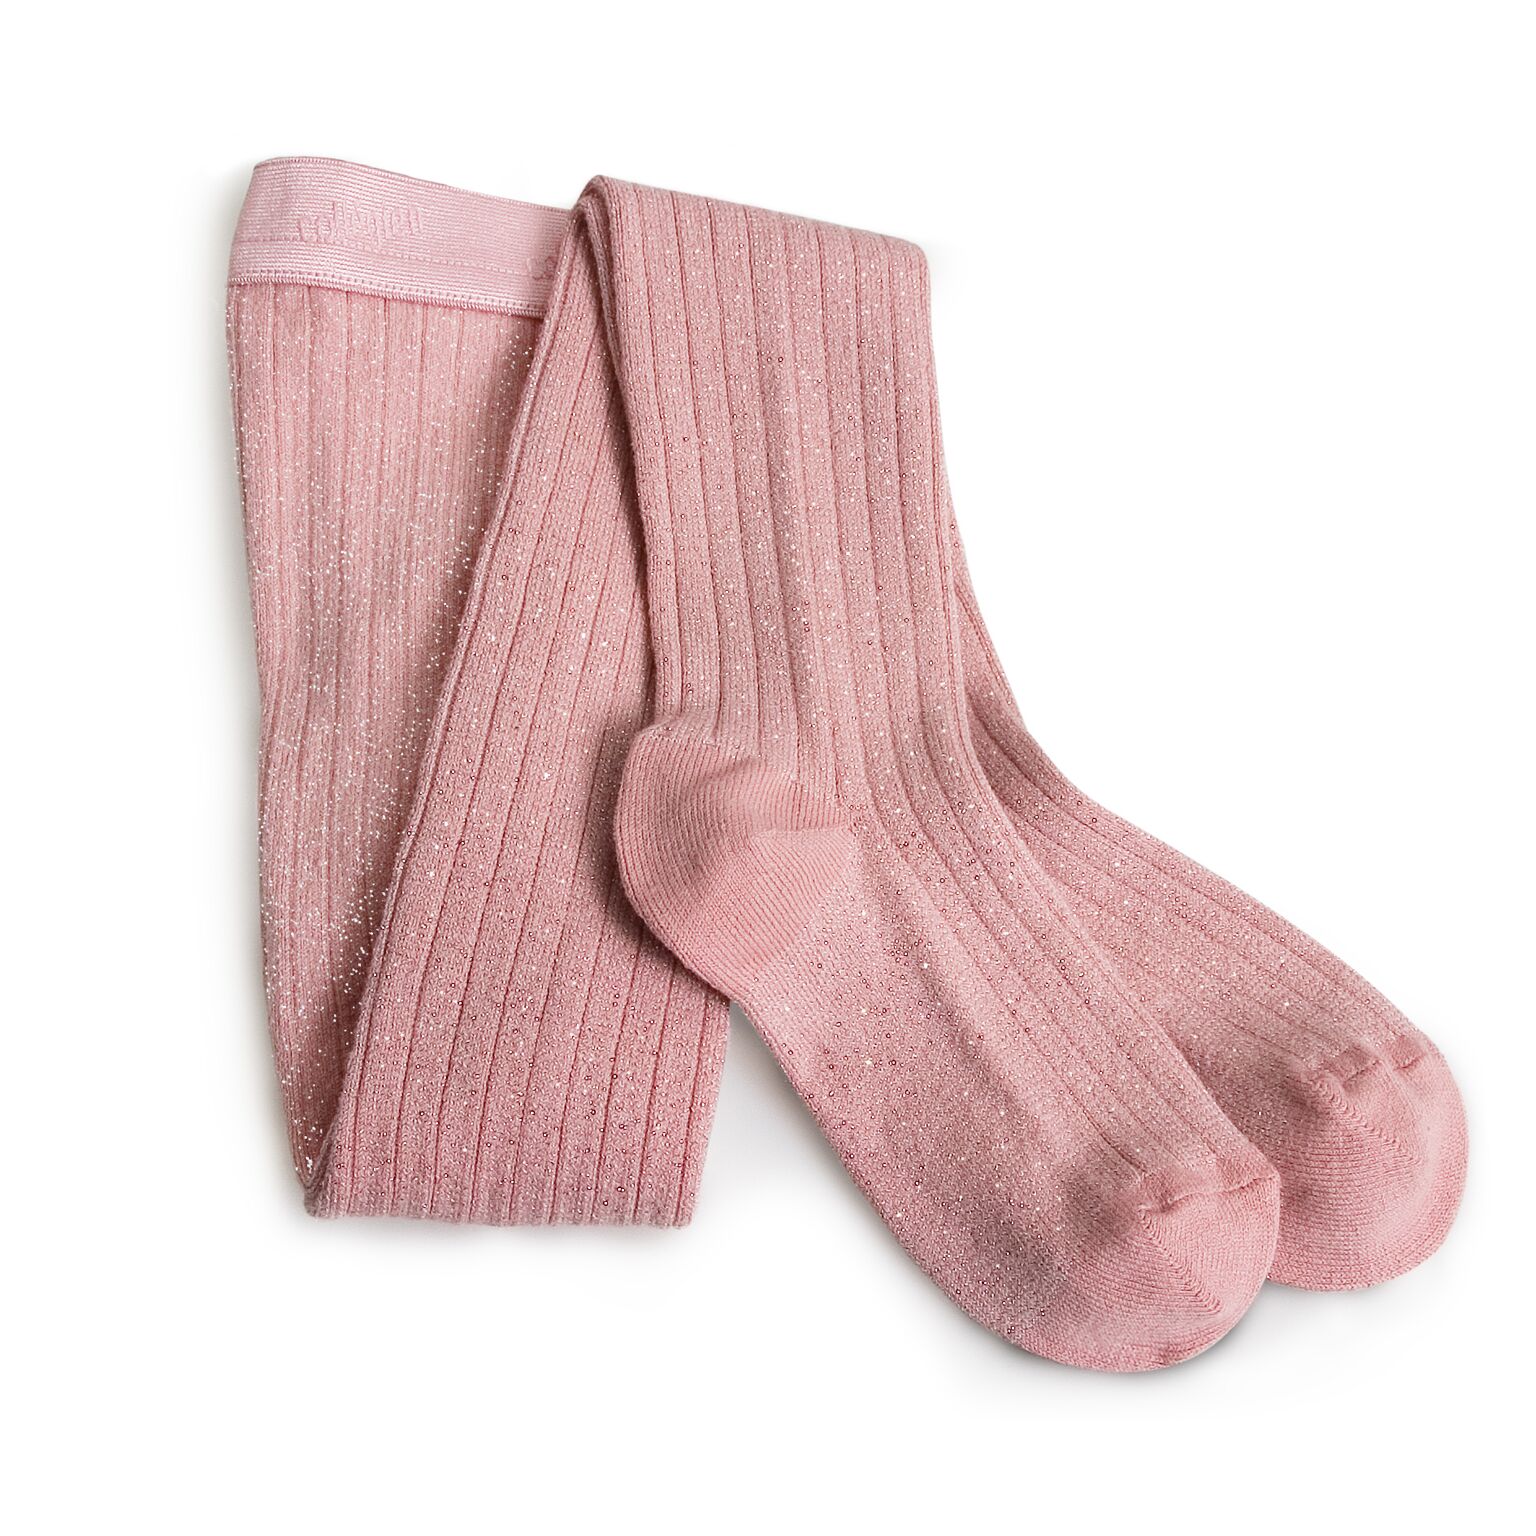 Collants à côtes quartz rose - paillettes collégien - mode fille 3/10 ans  collants & chaussettes - j'aime